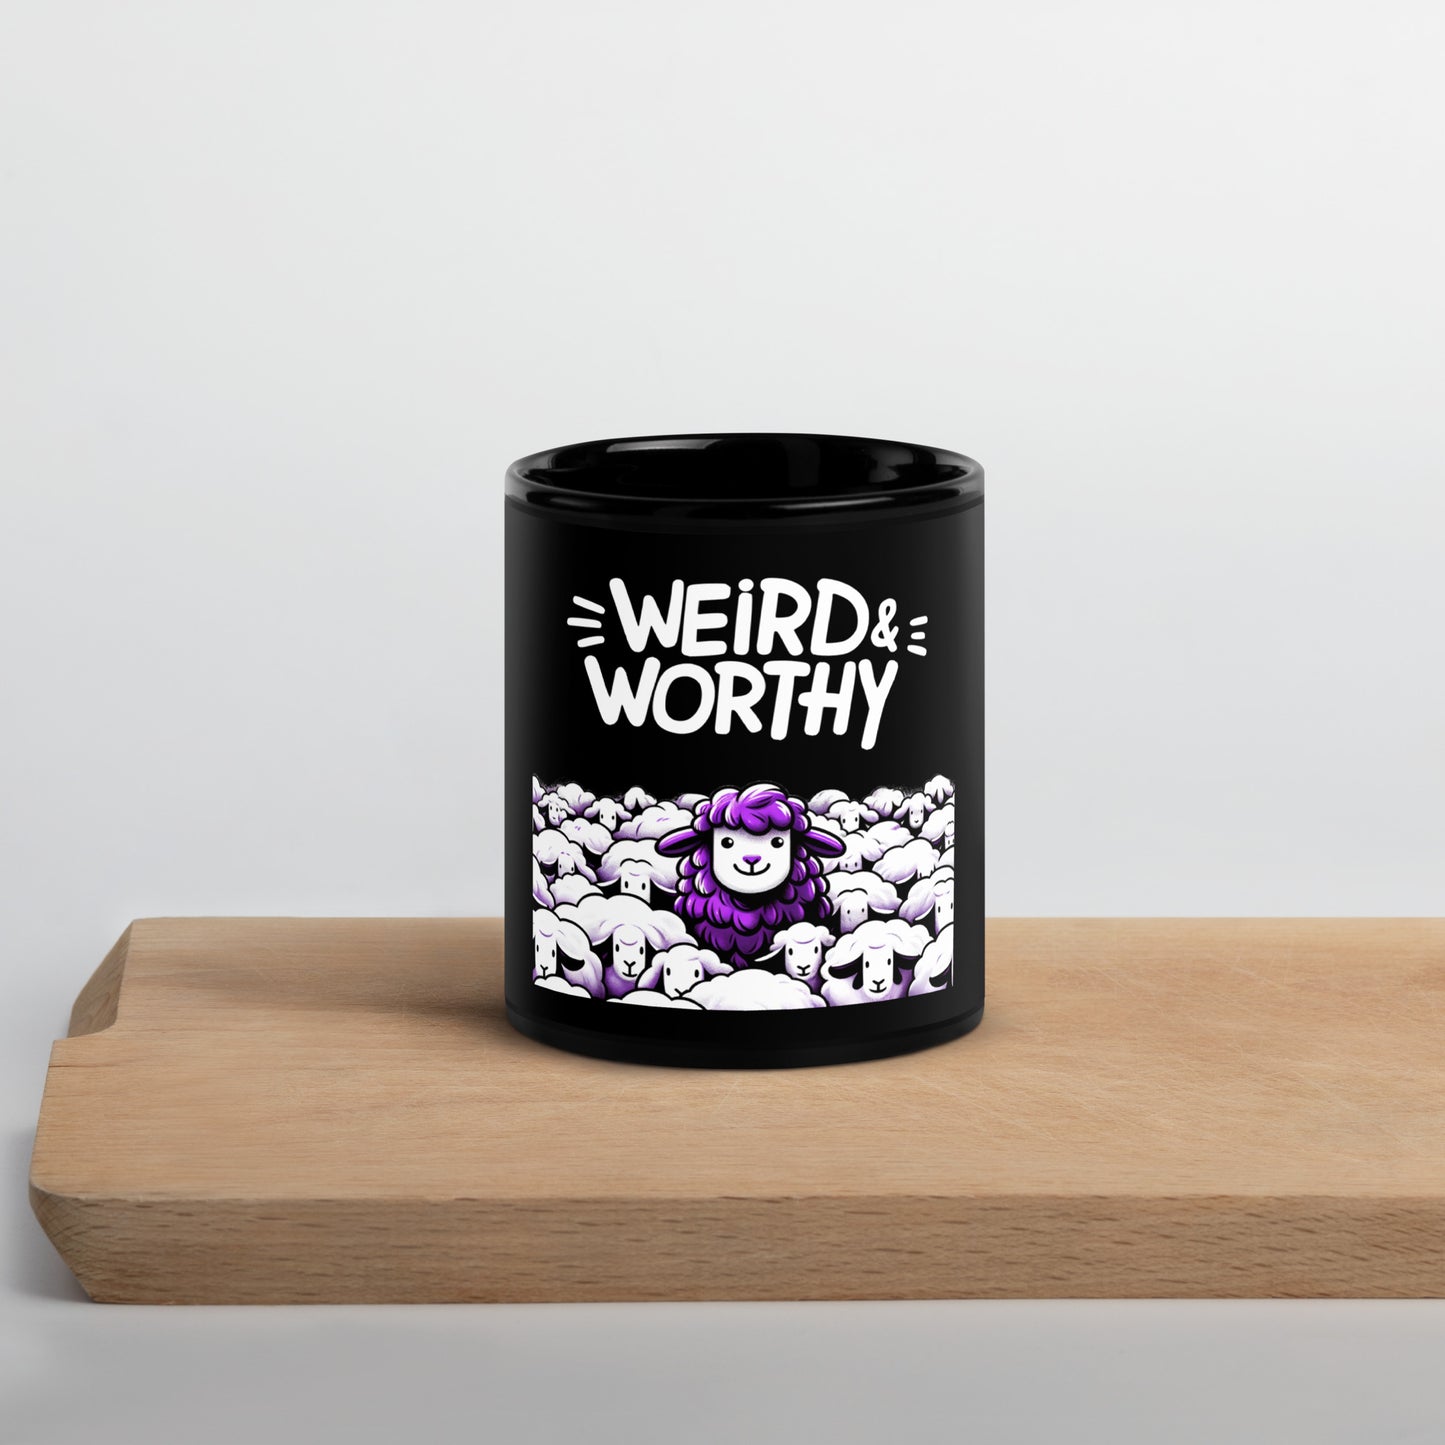 GWMS "Weird & Worthy" Black Glossy Mug